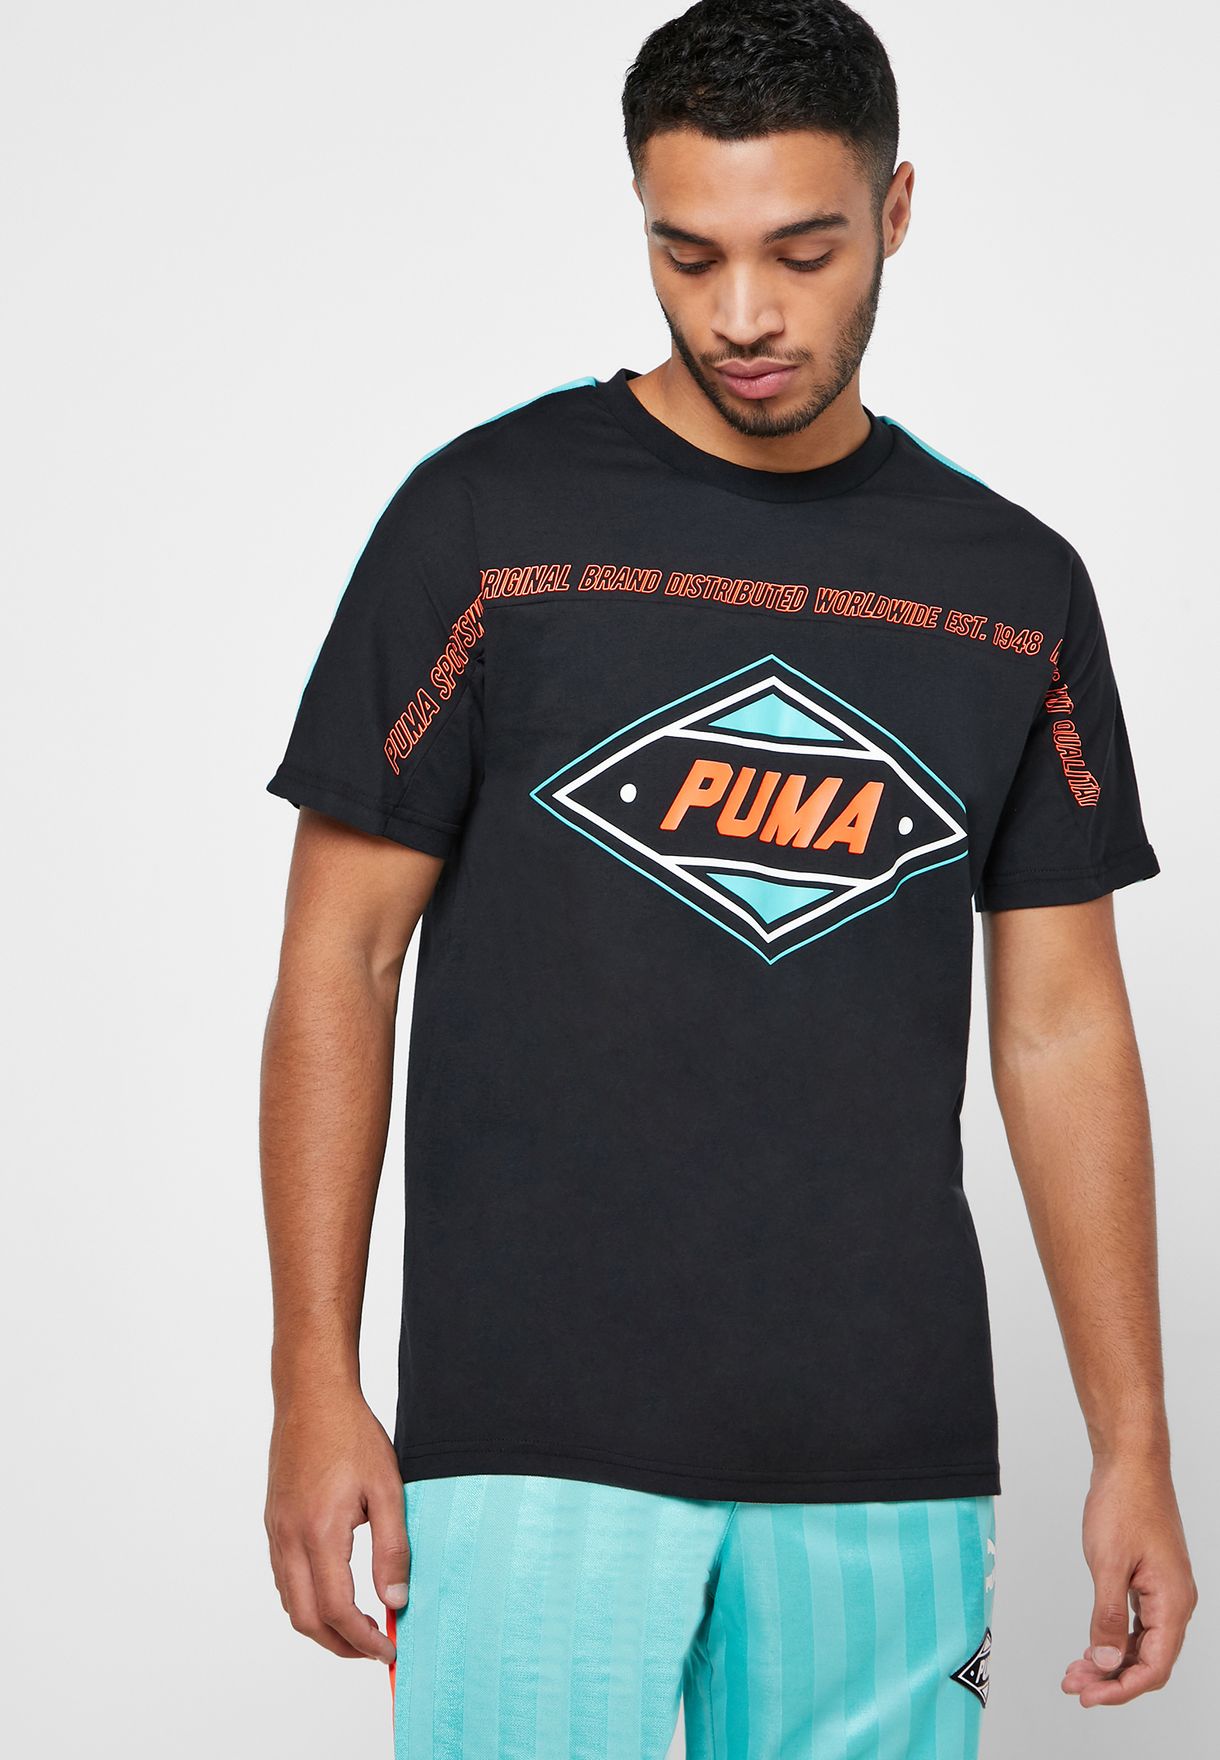 puma 1948 t shirt